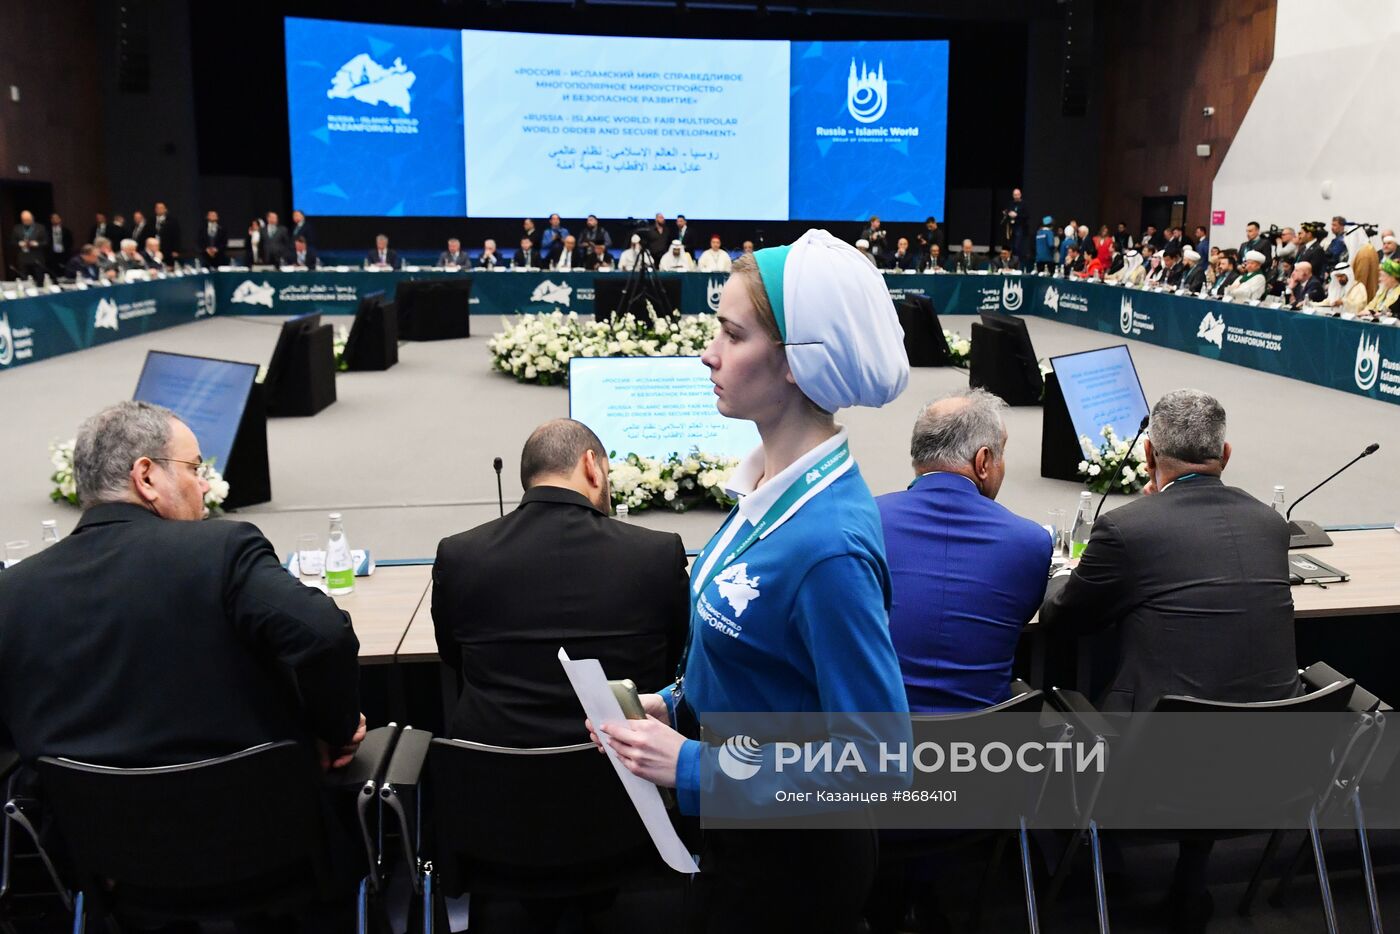 KAZANFORUM 2024. Заседание группы стратегического видения "Россия – Исламский мир"